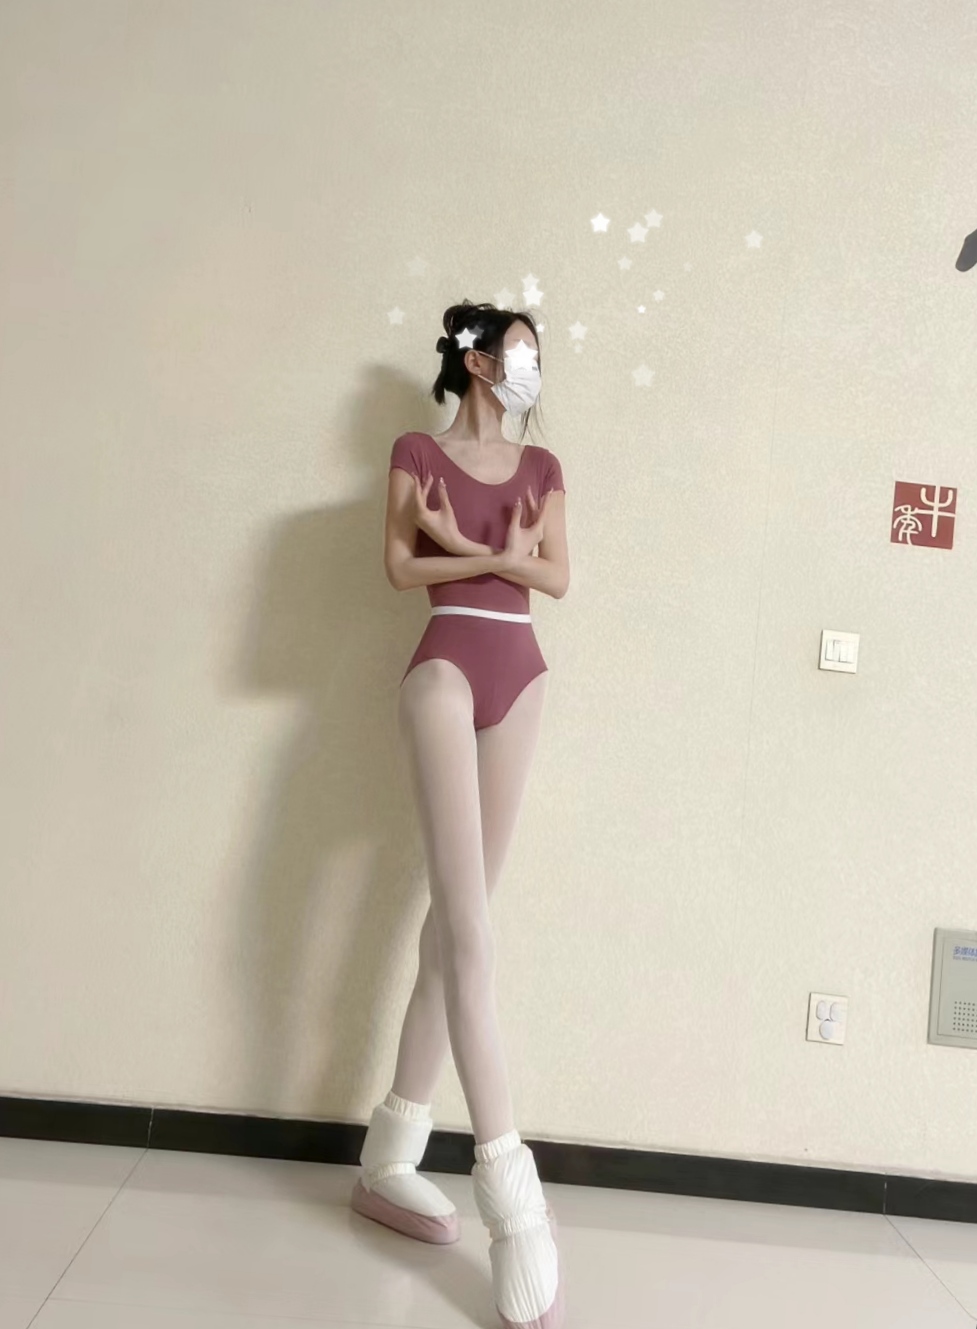 [雅俗共赏][舞蹈生系列]尹同学在线解答舞蹈女孩平胸问题[38P]